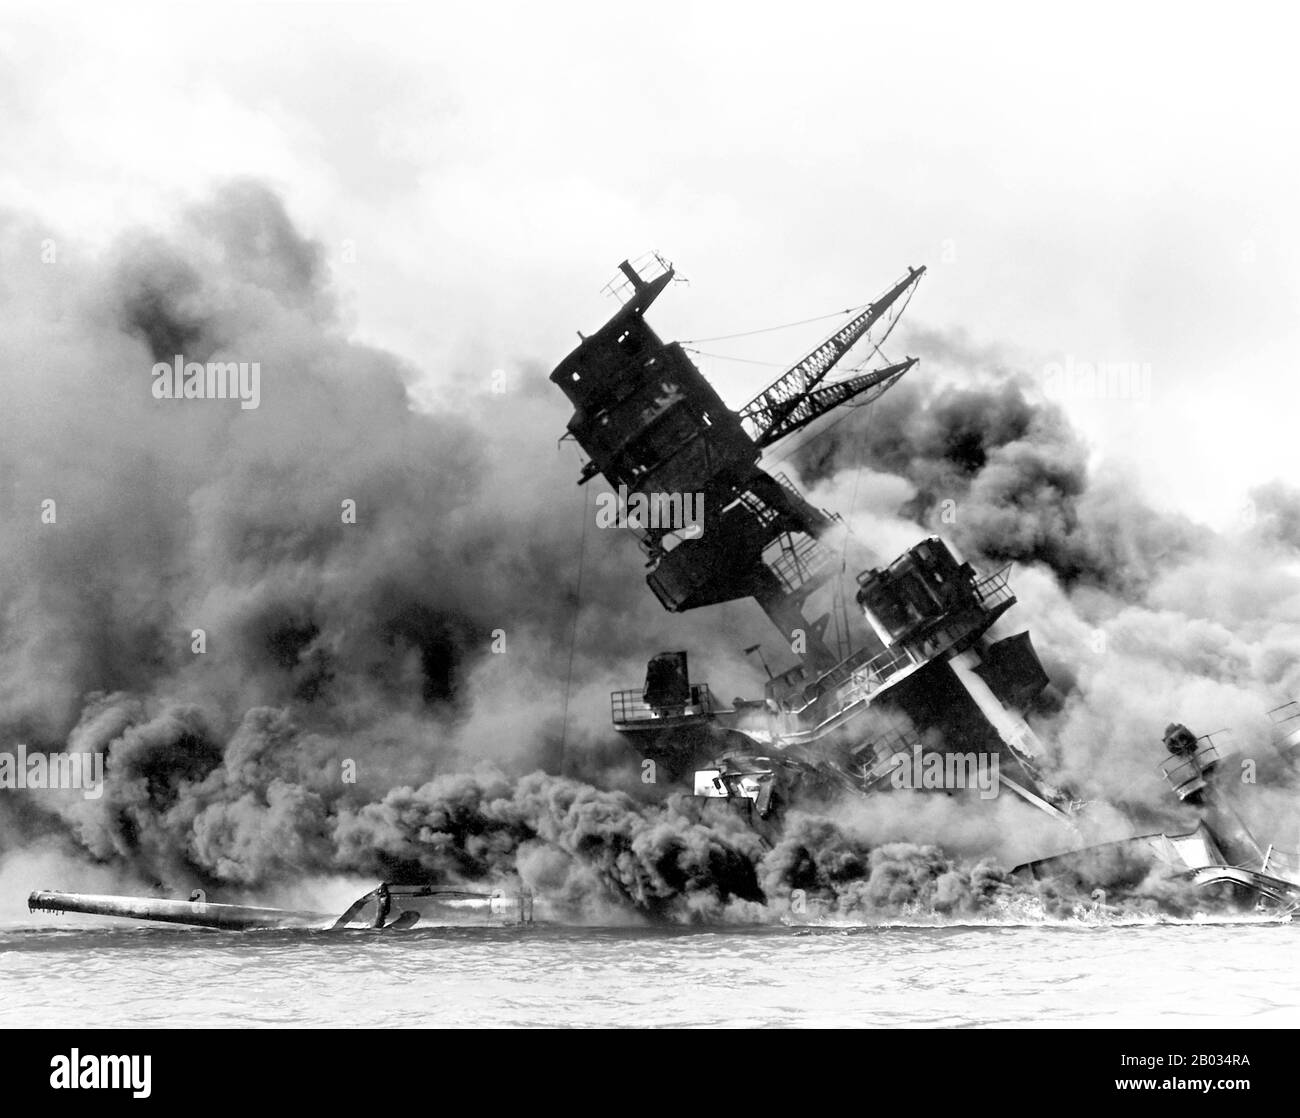 Der Angriff auf Pearl Harbor war ein überraschender Militärschlag der Kaiserlich japanischen Marine gegen den Marinestützpunkt der Vereinigten Staaten in Pearl Harbor, Hawaii, am Morgen des 7. Dezember 1941 (8. Dezember in Japan). Der Angriff war als präventive Maßnahme gedacht, um die US-Pazifikflotte vor einer Einmischung in militärische Aktionen zu bewahren, die das Reich von Japan in Südostasien gegen Überseegebiete des Vereinigten Königreichs, der Niederlande und der Vereinigten Staaten plante. Der Angriff kam als tiefgreifender Schock für das amerikanische Volk und führte direkt zum amerikanischen Eintritt in die World Wa Stockfoto